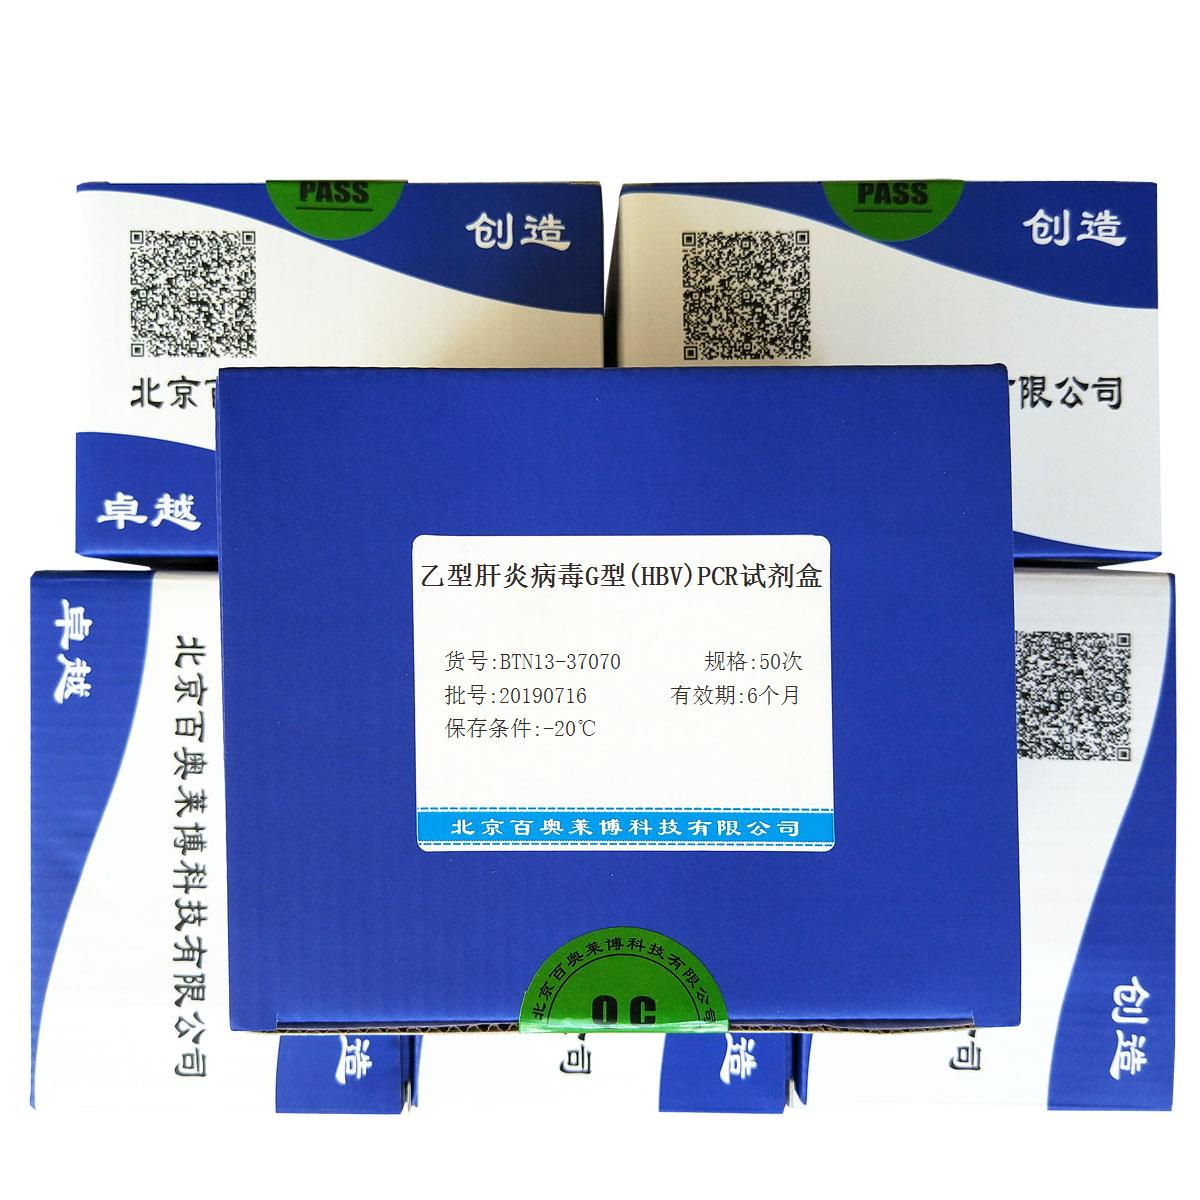 乙型肝炎病毒G型(HBV)PCR试剂盒北京品牌